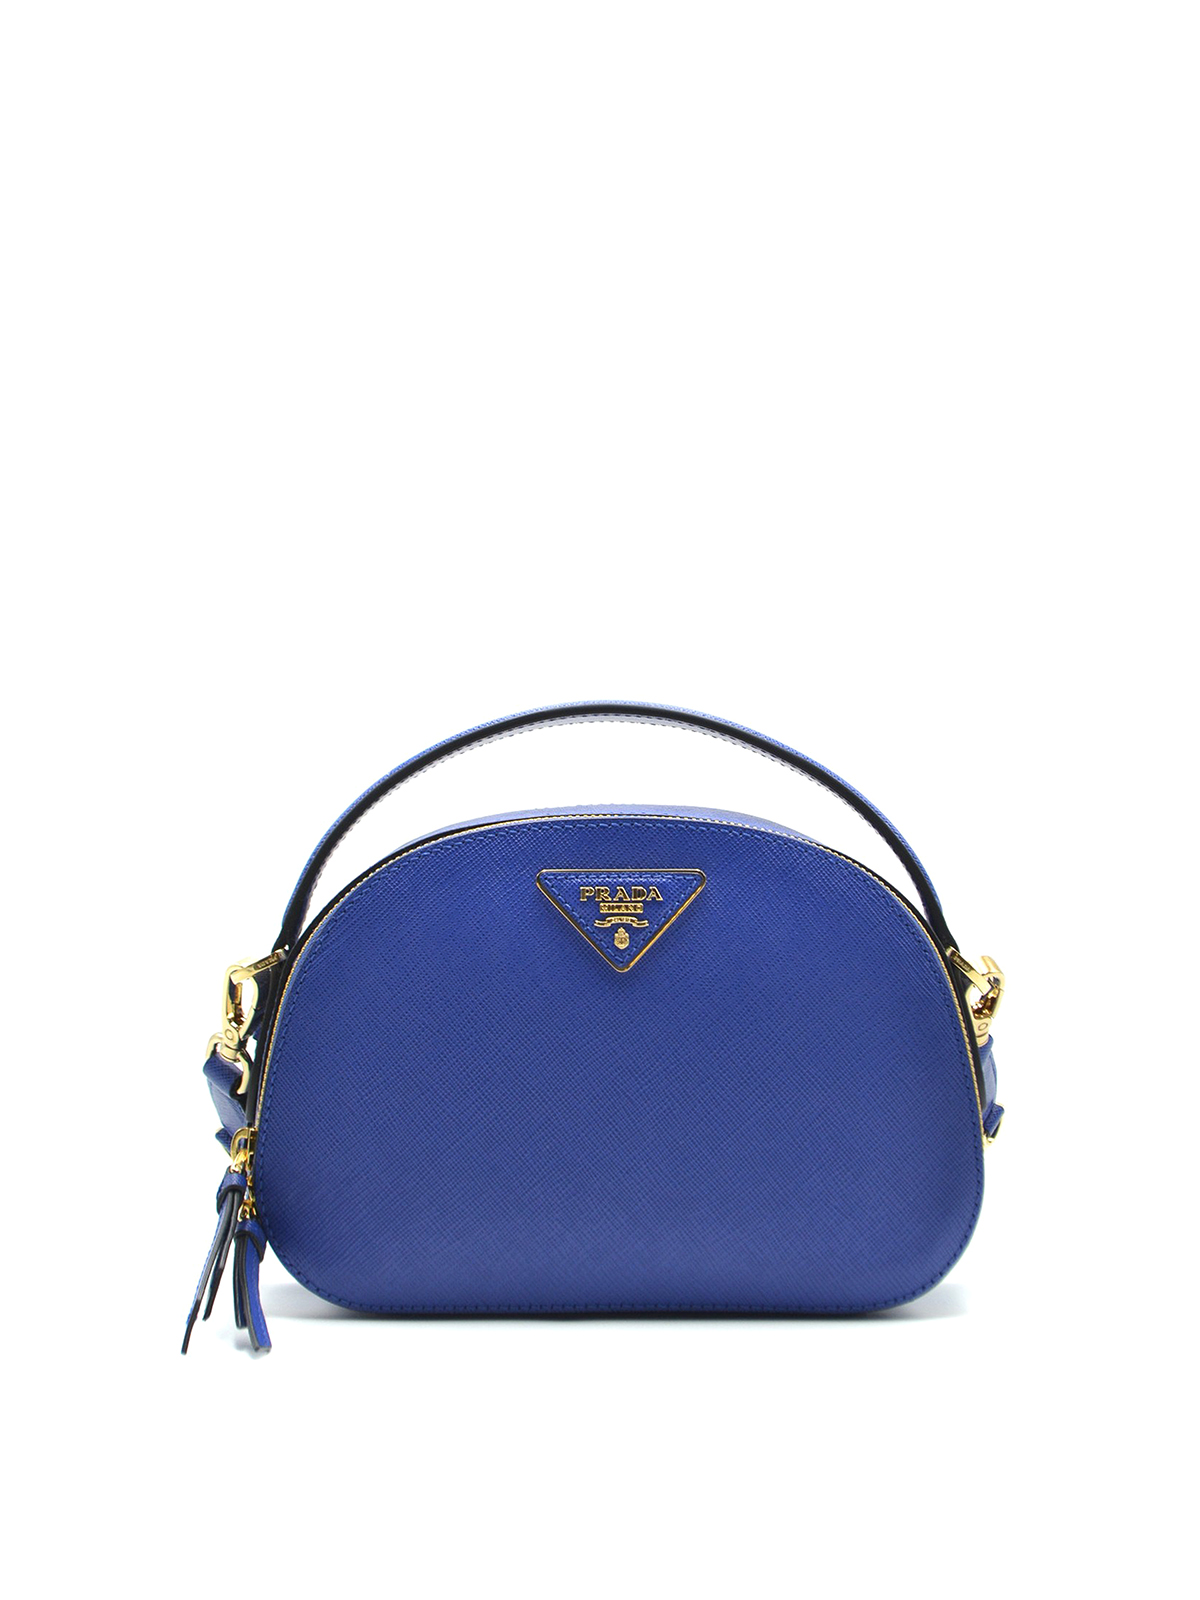 Shoulder bags Prada - Odette blue saffiano leather handbag